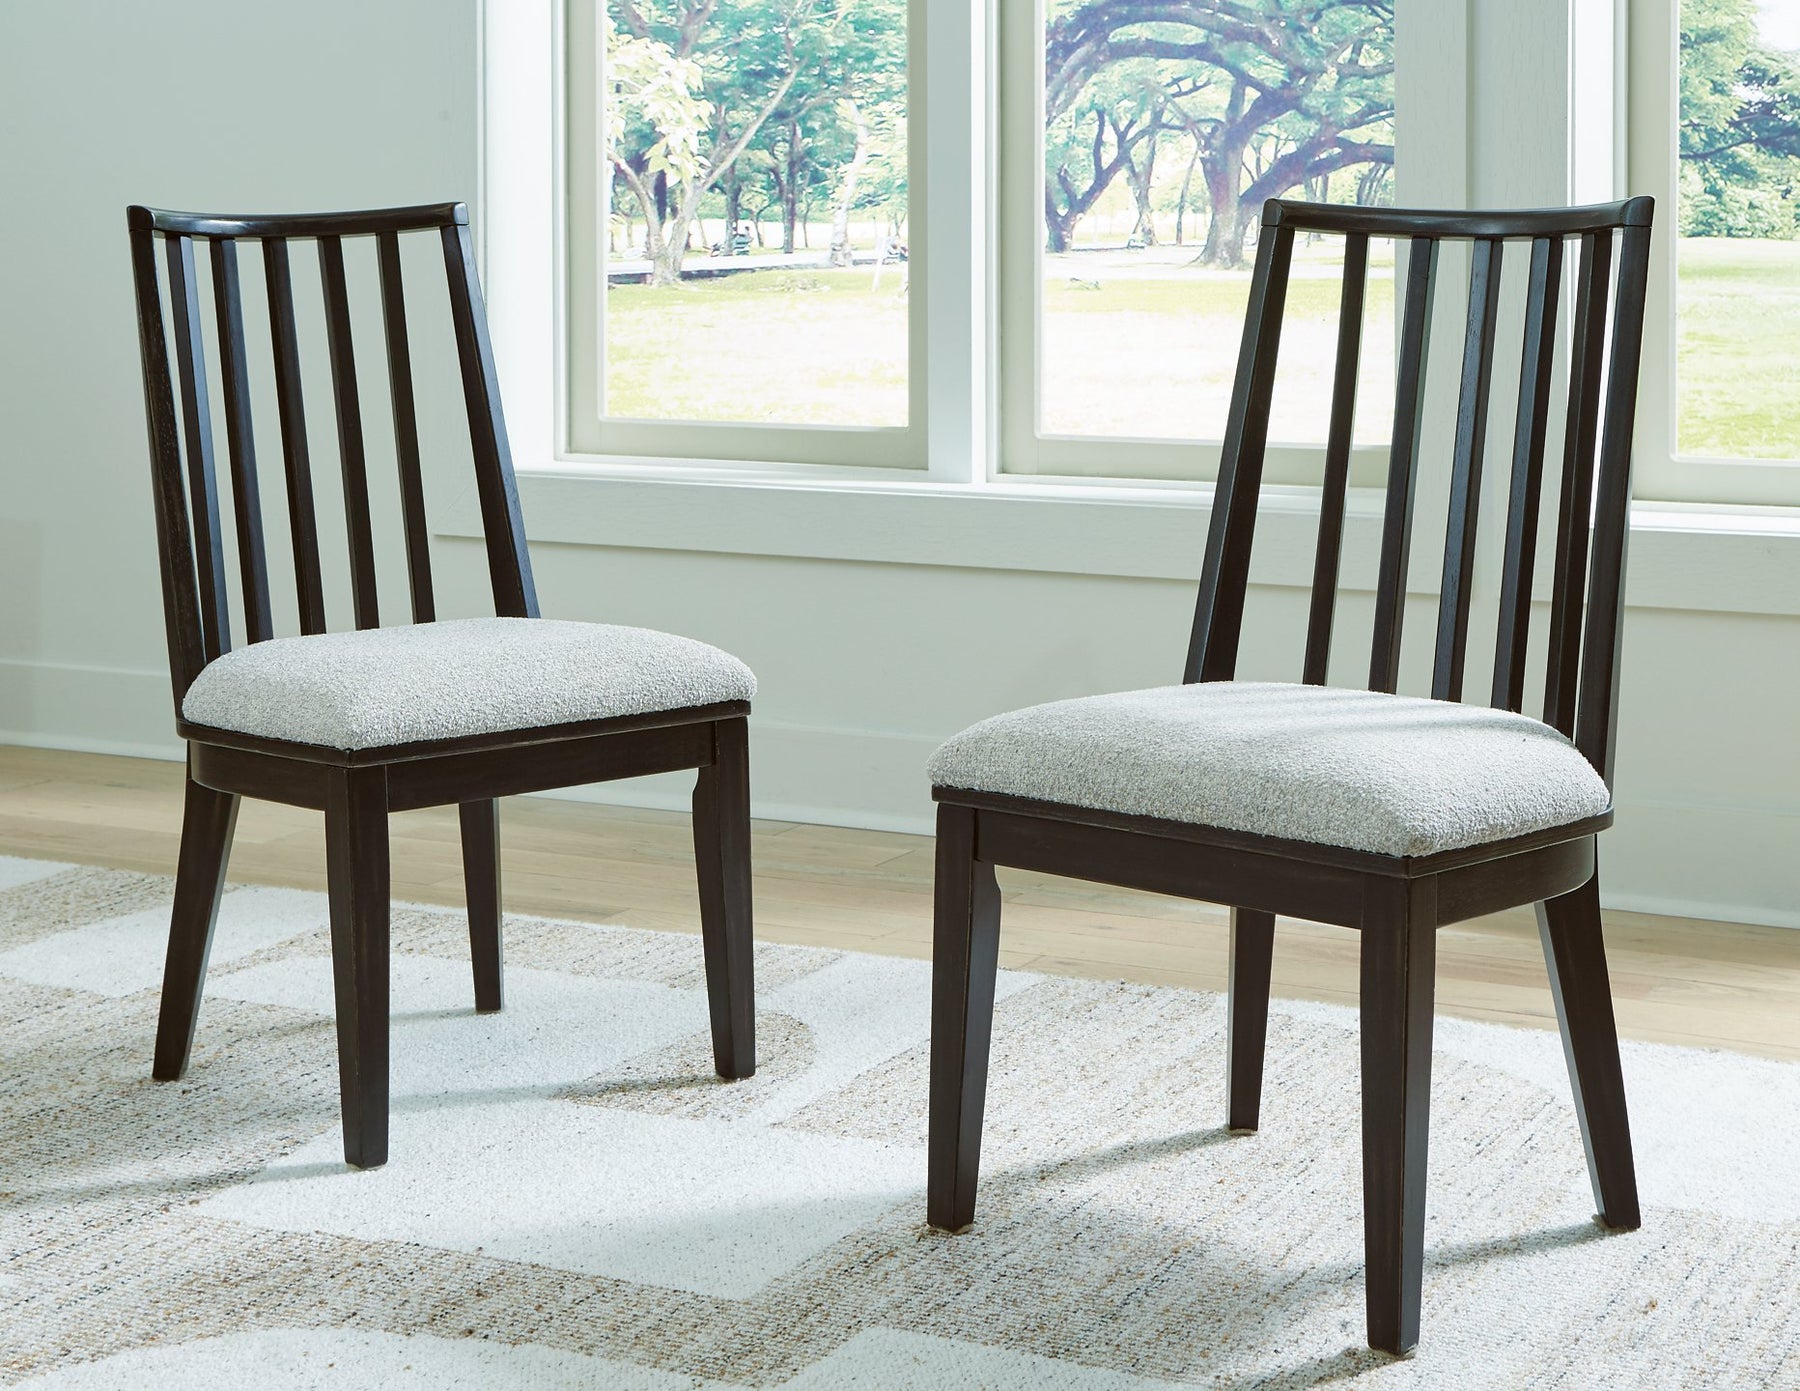 Galliden Dining Chair - Half Price Furniture